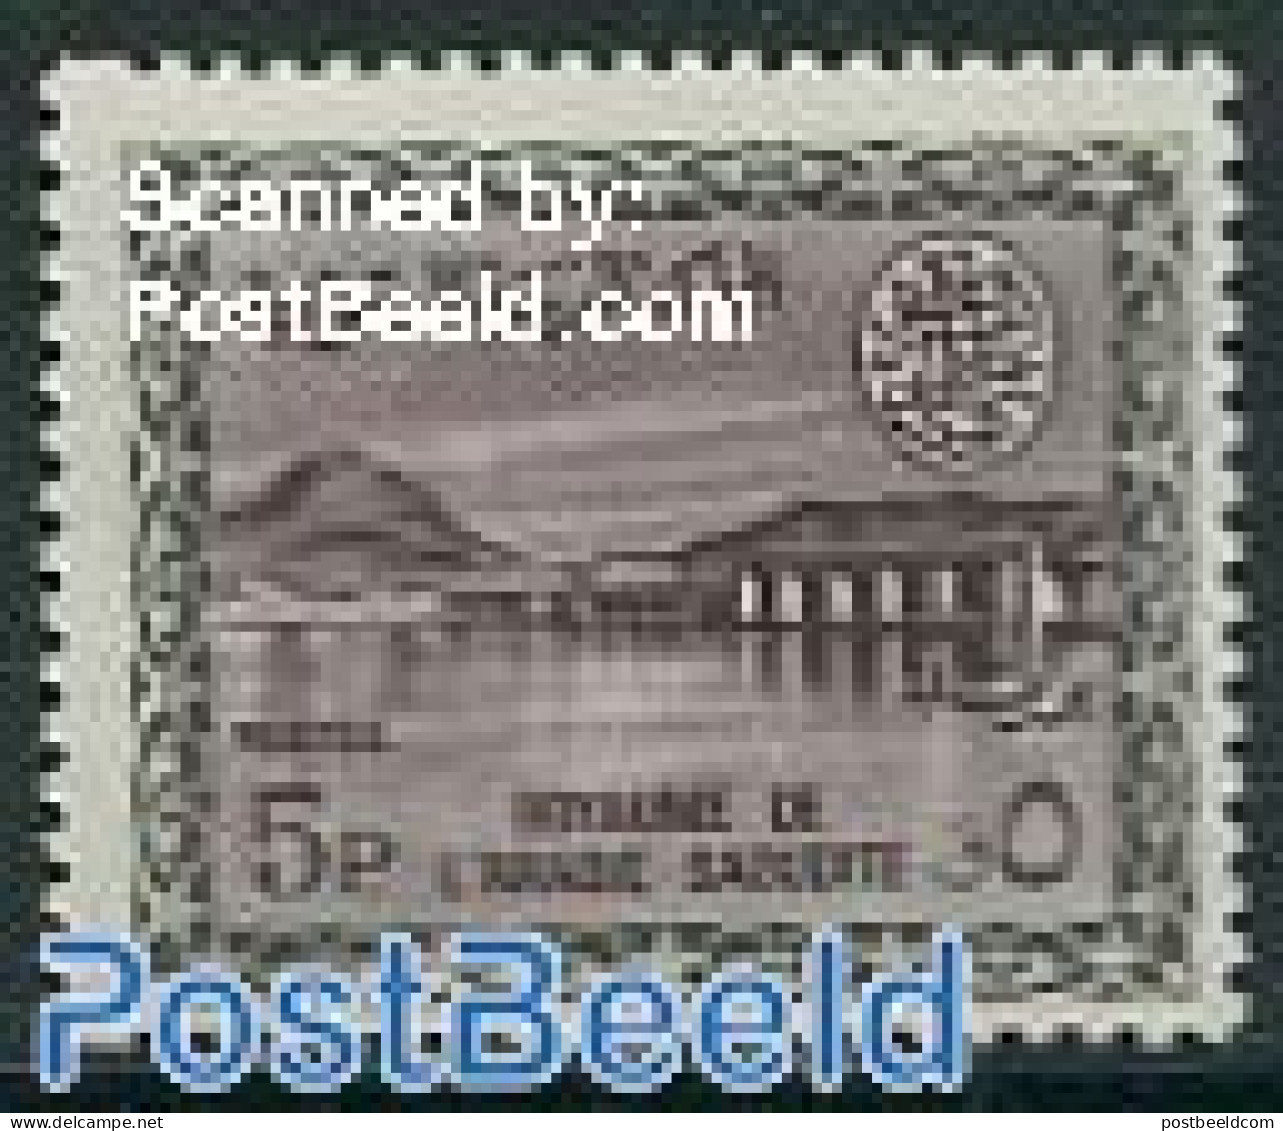 Saudi Arabia 1965 5P, Stamp Out Of Set, Mint NH, Nature - Water, Dams & Falls - Saudi-Arabien